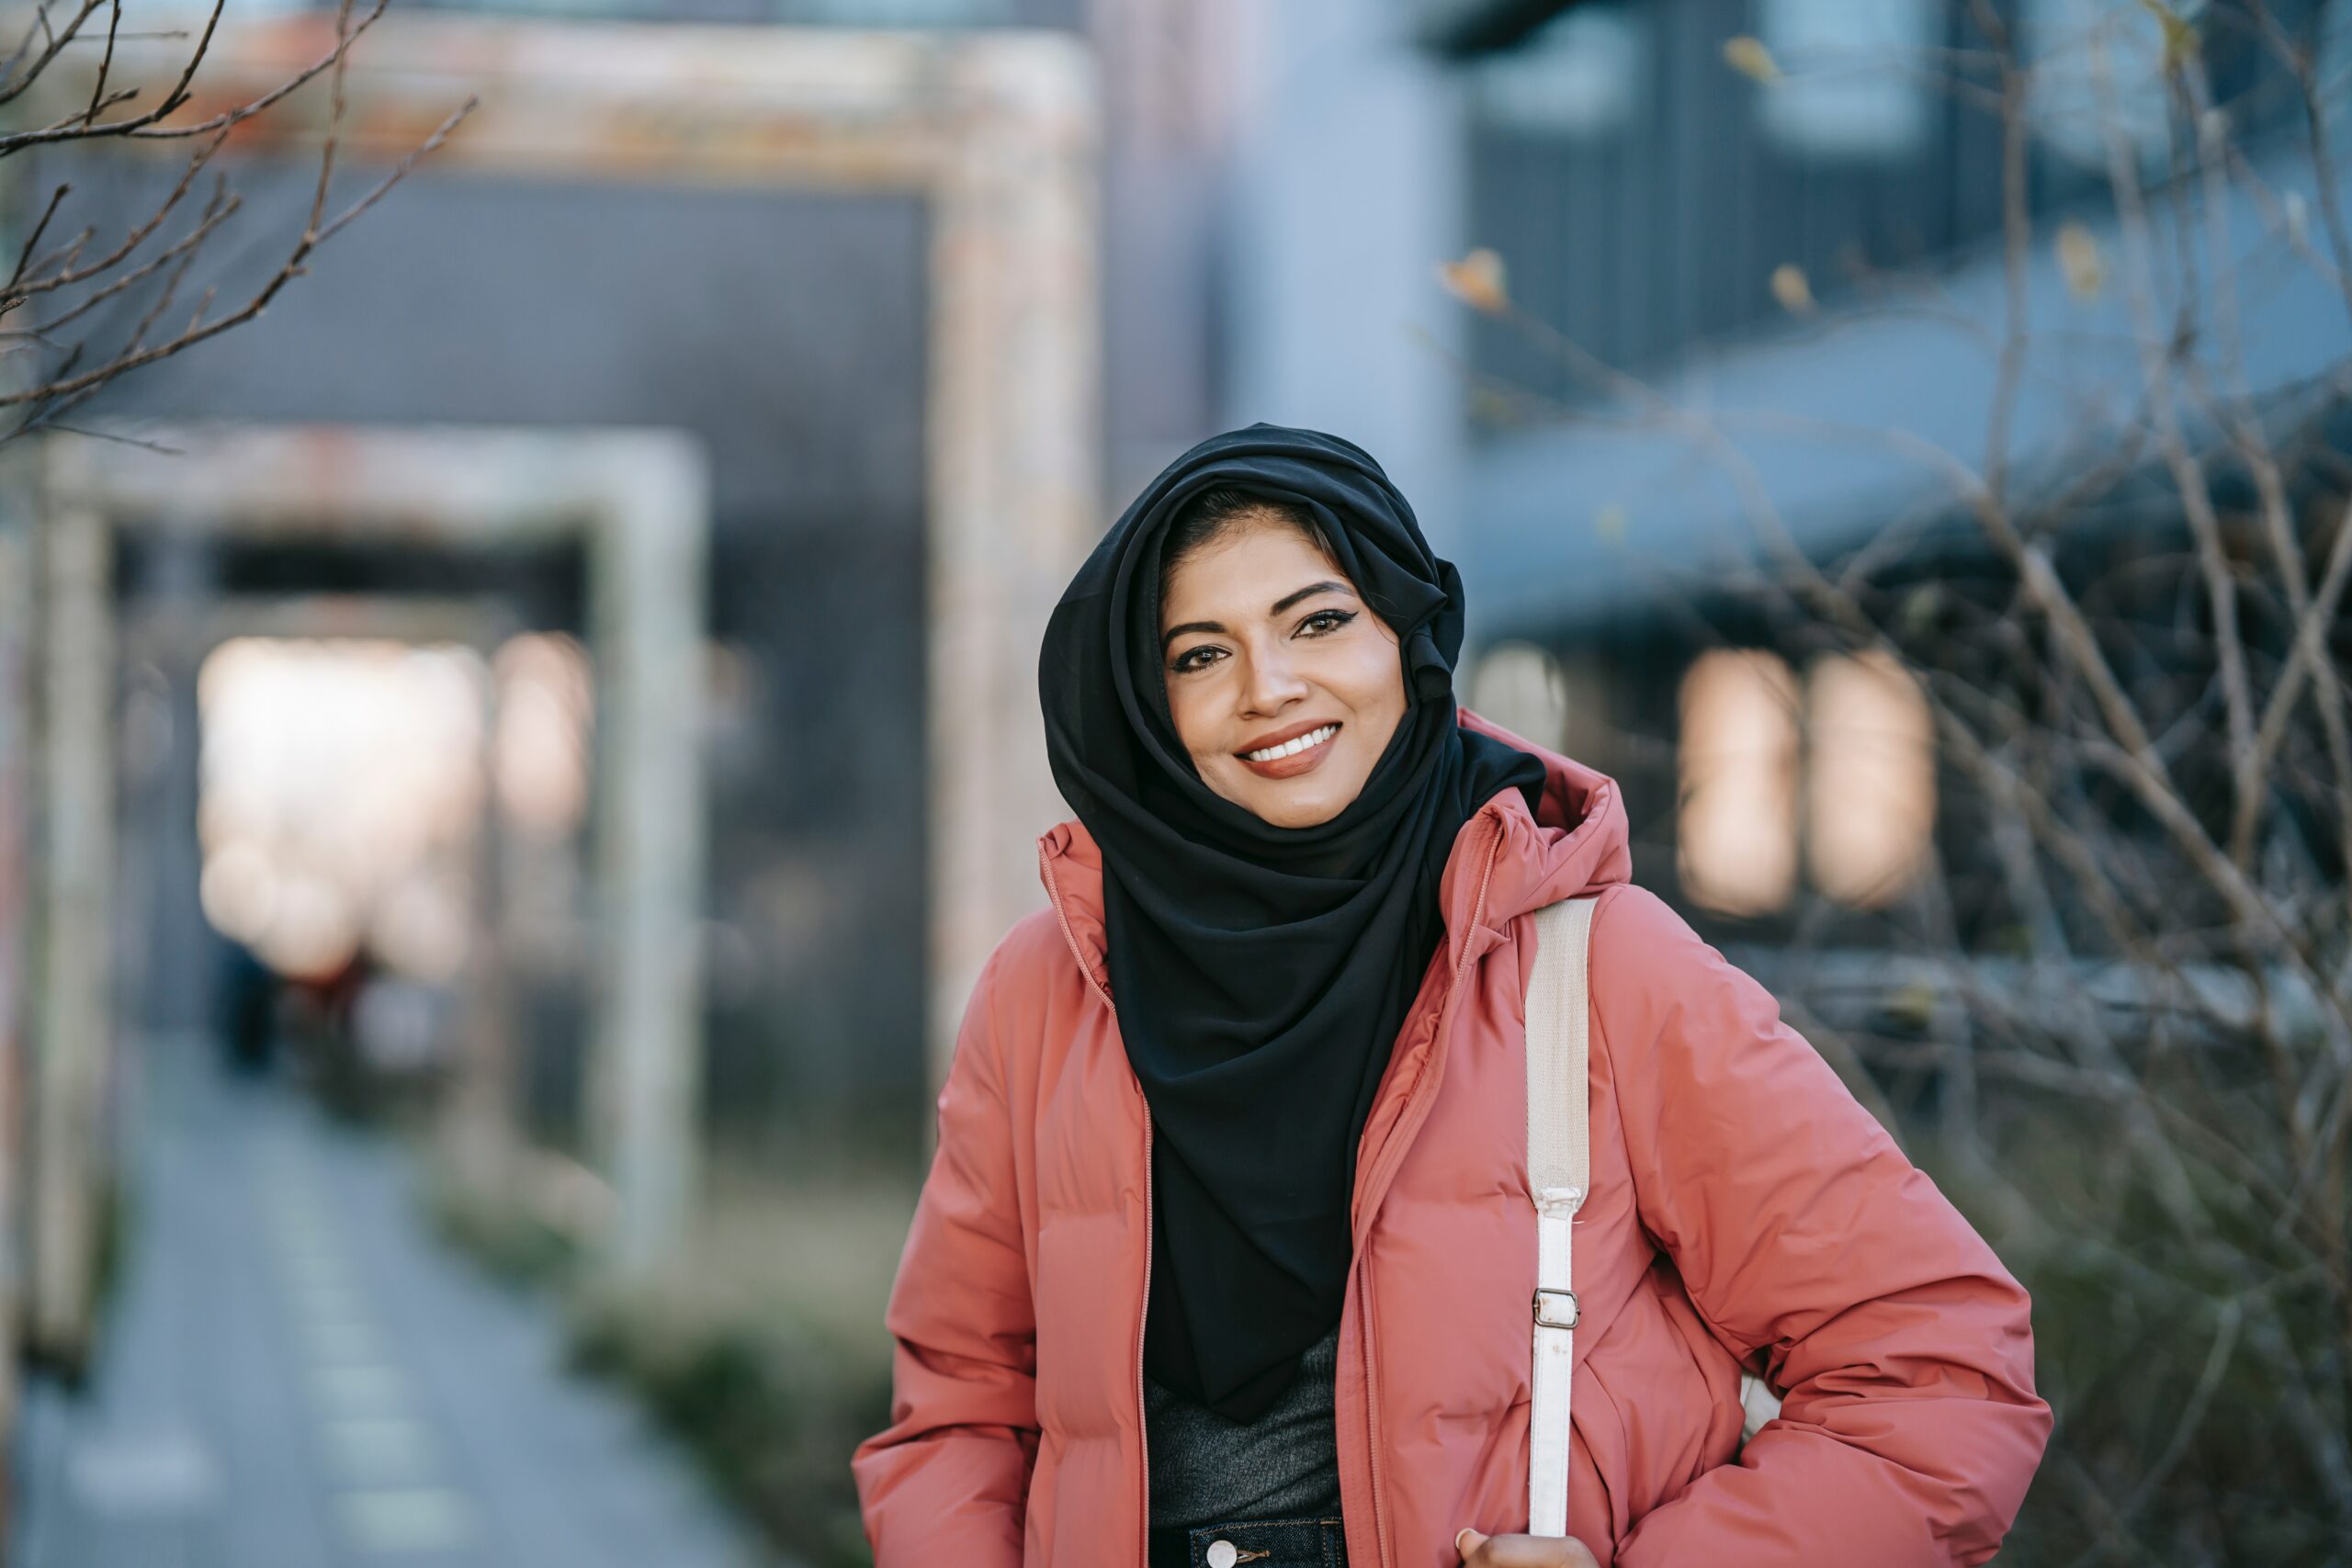 Eine junge muslimische Frau trägt einen Hijab und eine rosane Jacke.